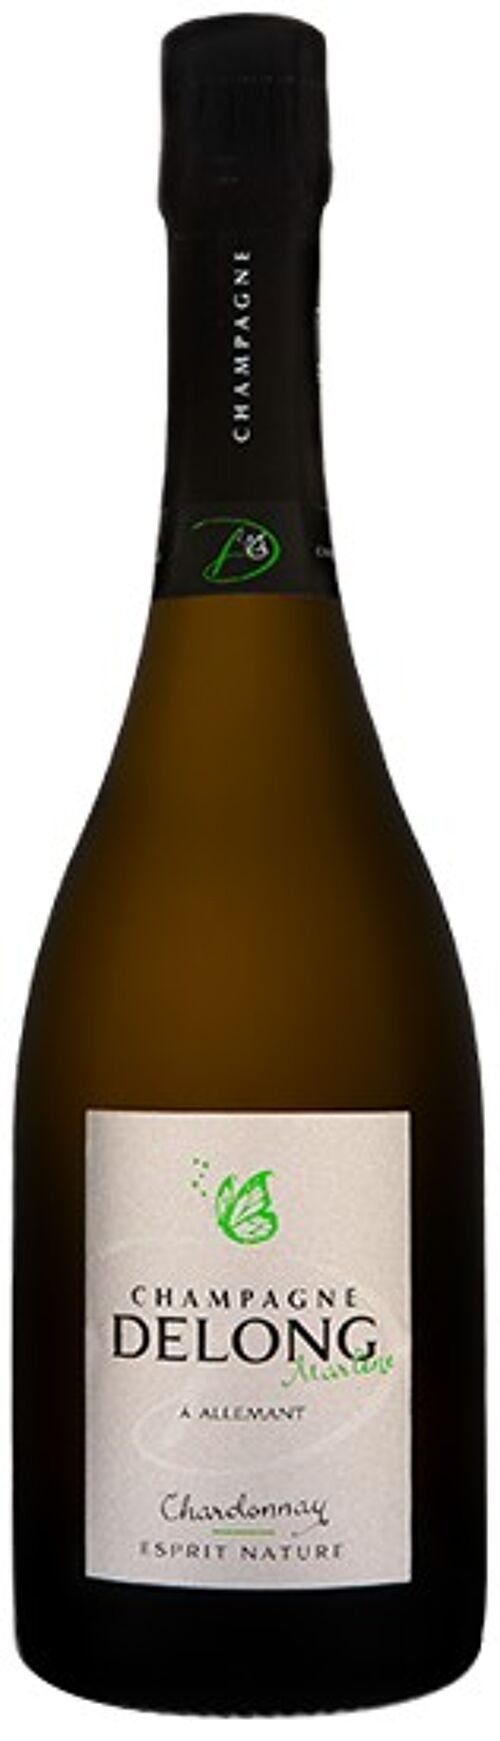 Esprit Nature Chardonnay - Bouteille 75cl